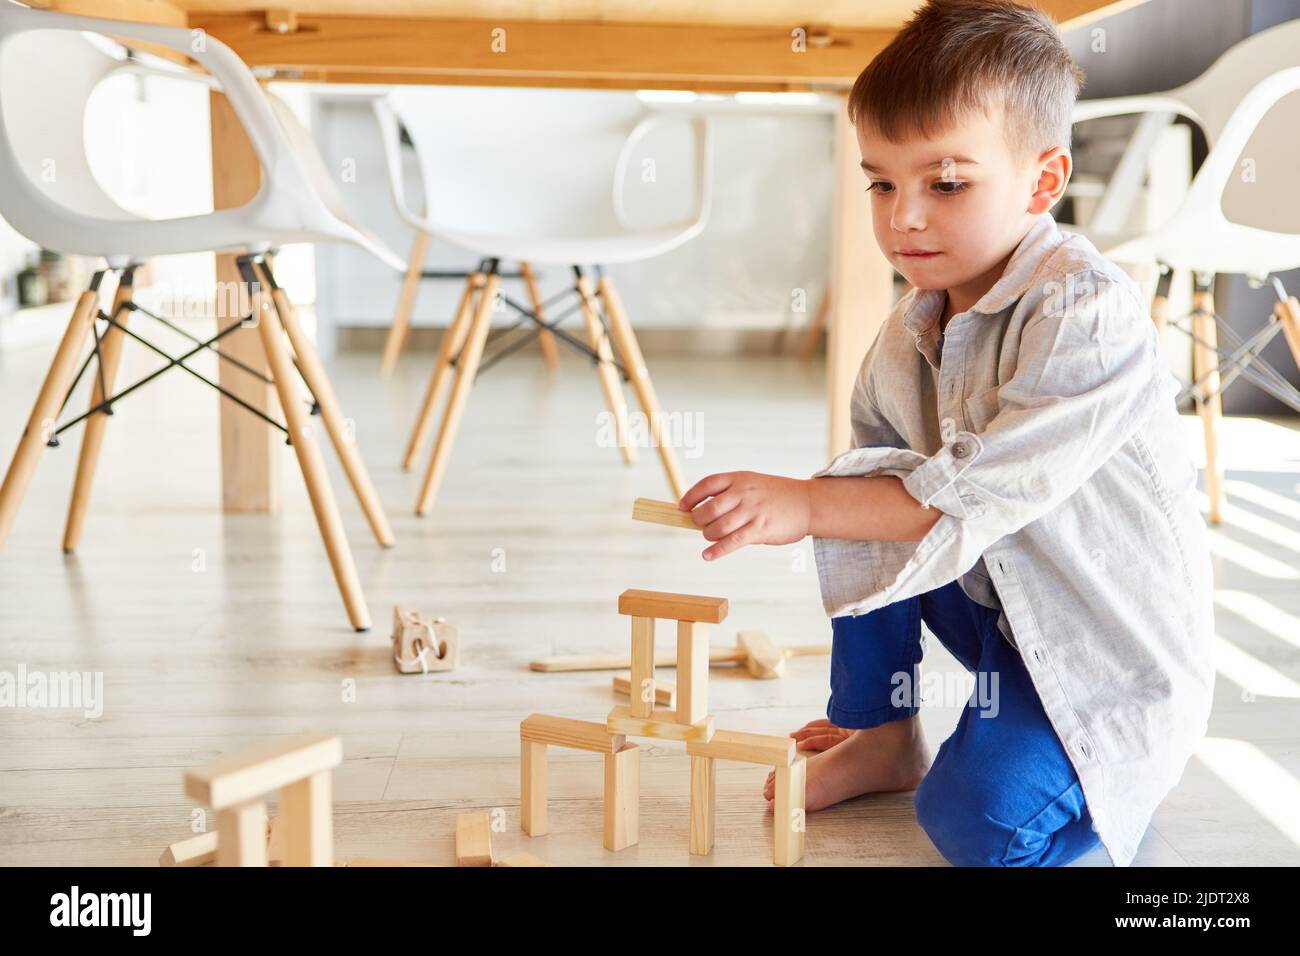 El niño pequeño se concentra en apilar bloques de madera para desarrollar habilidades motoras finas Foto de stock